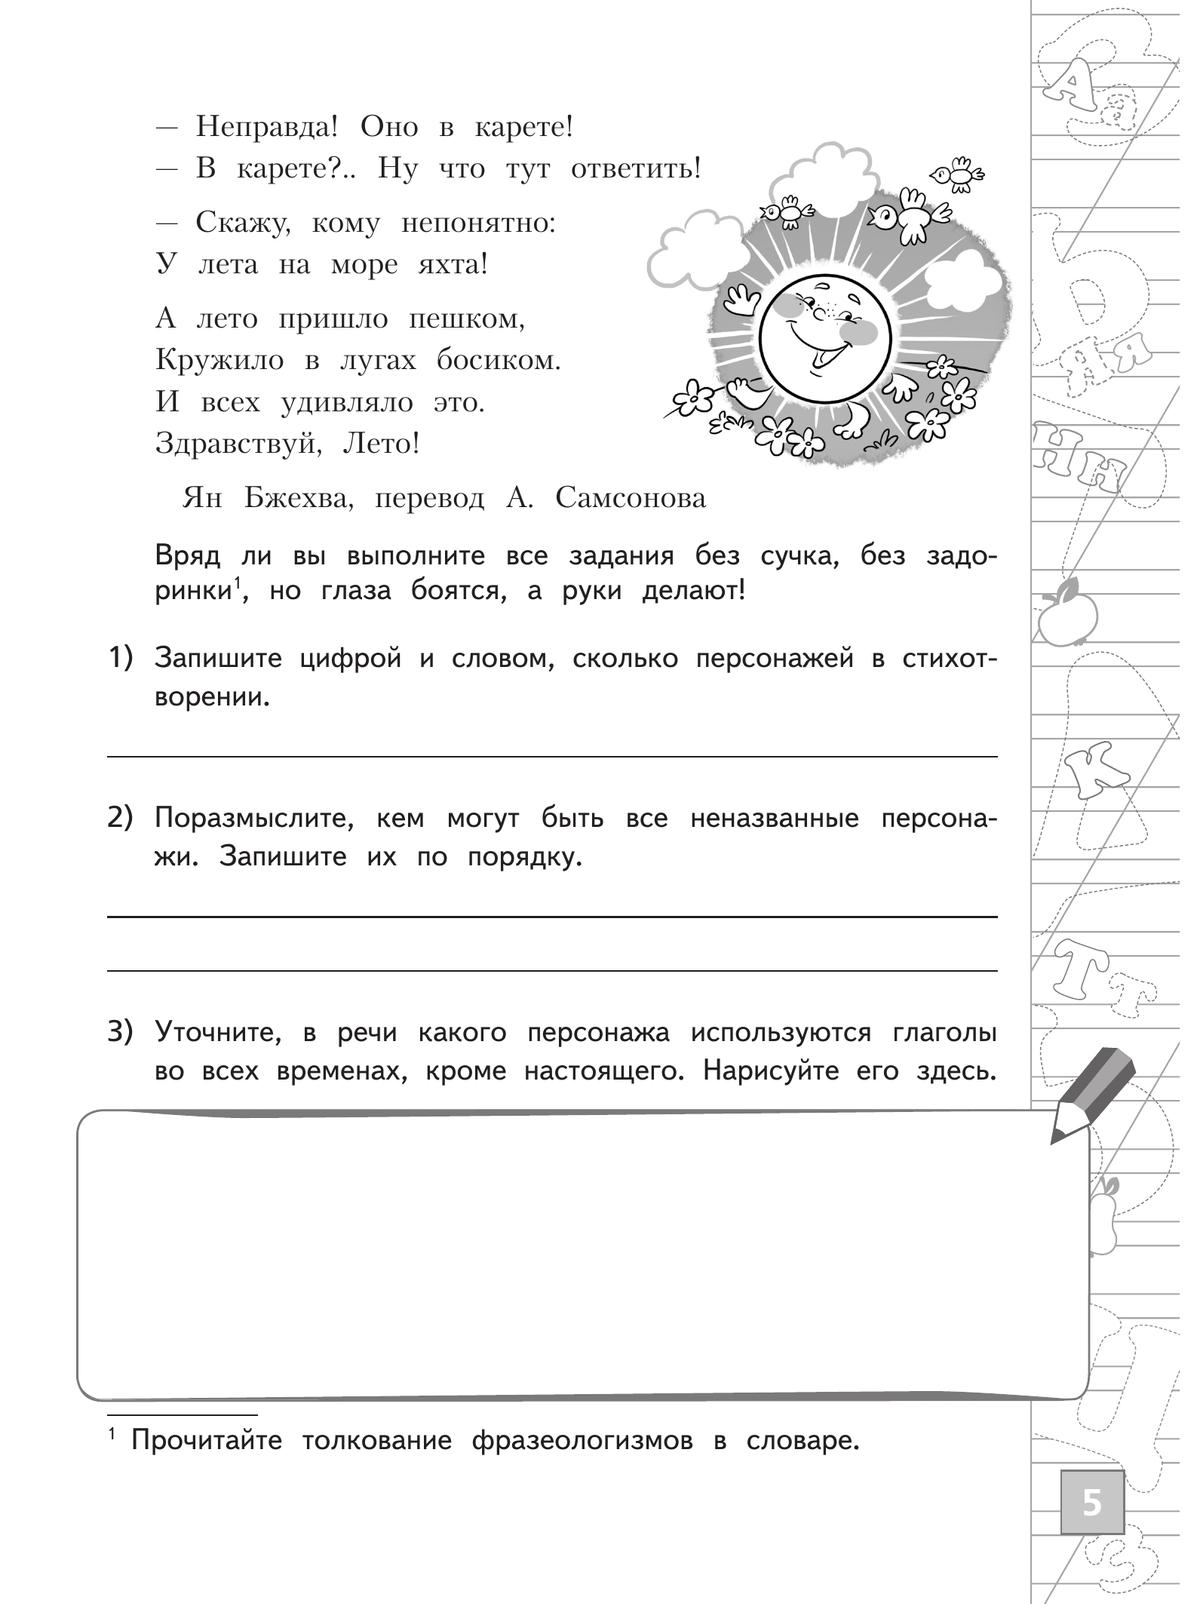 Русский язык. Тетрадь летних заданий. 4 класс 5